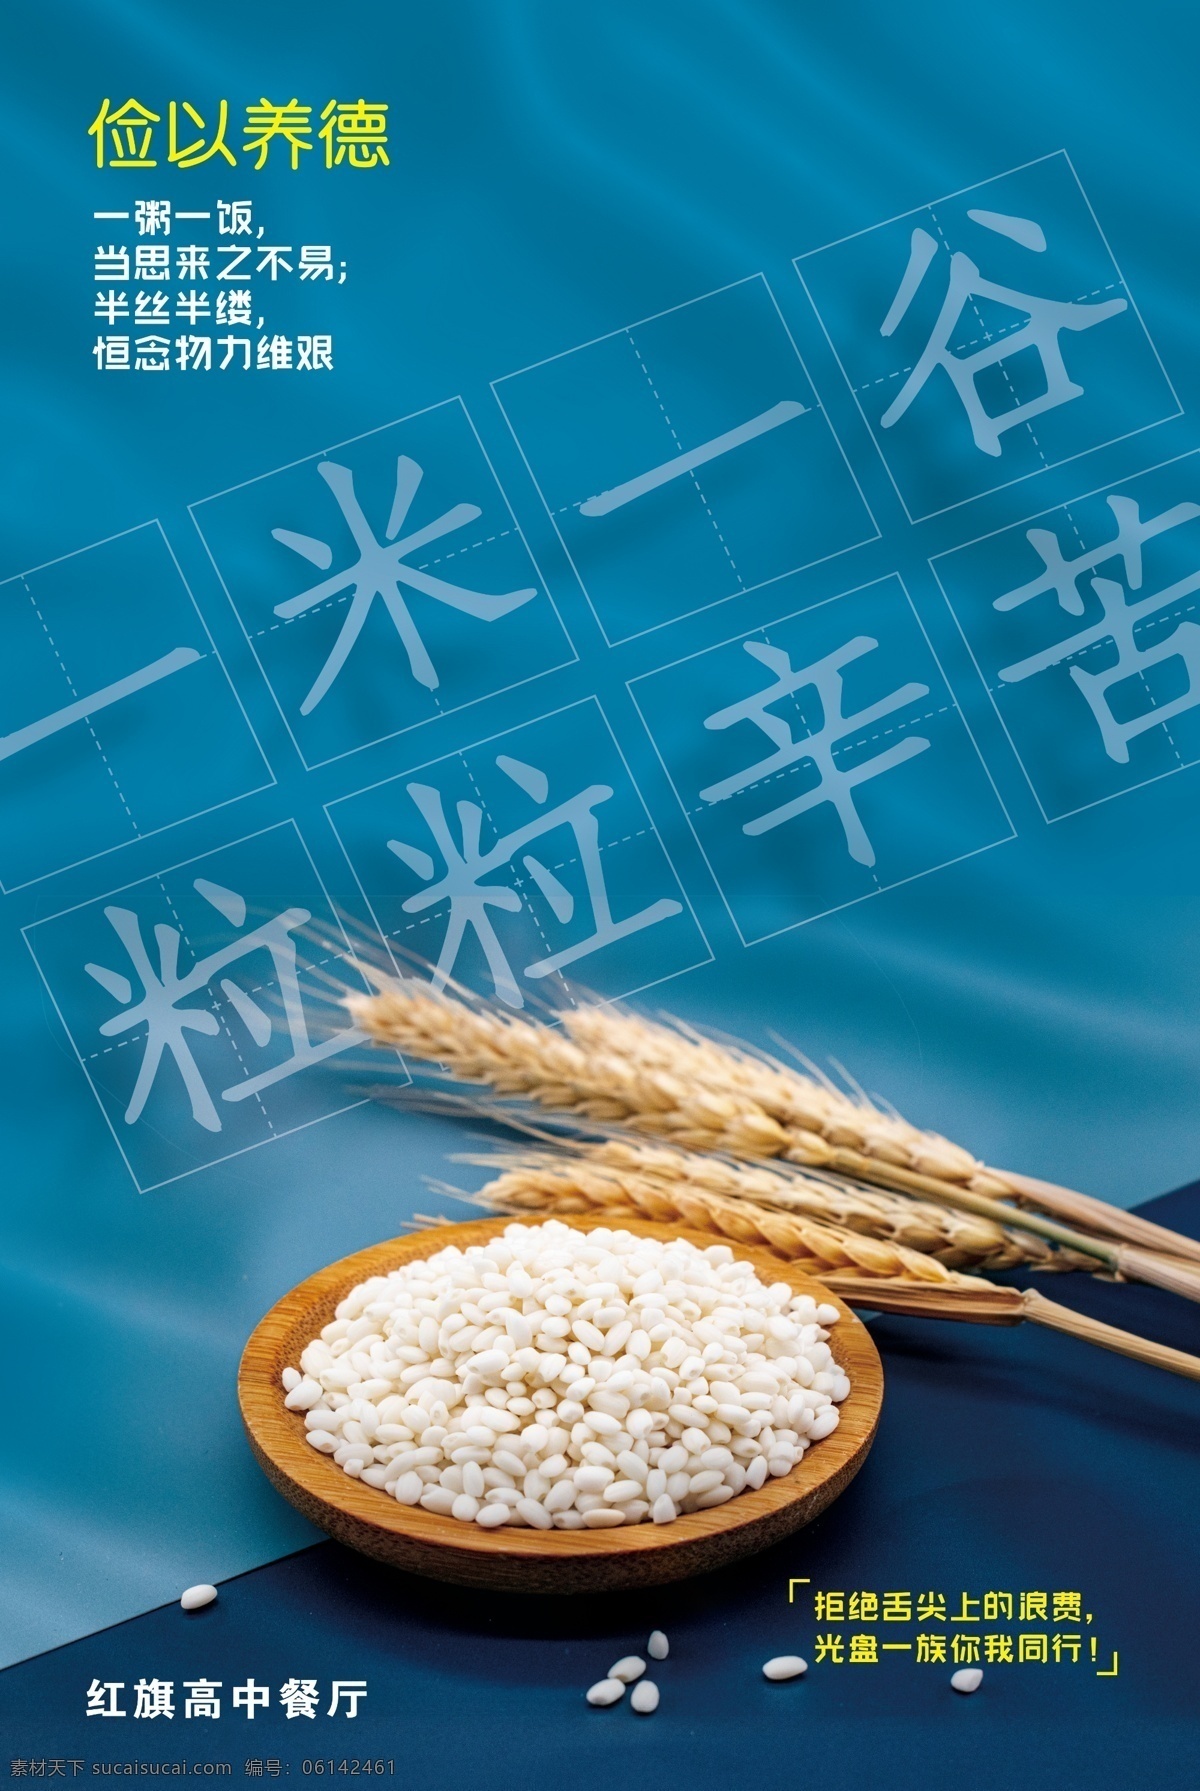 光盘 行动 海报 辛苦 米饭 筷子 节约粮食 分层 背景素材